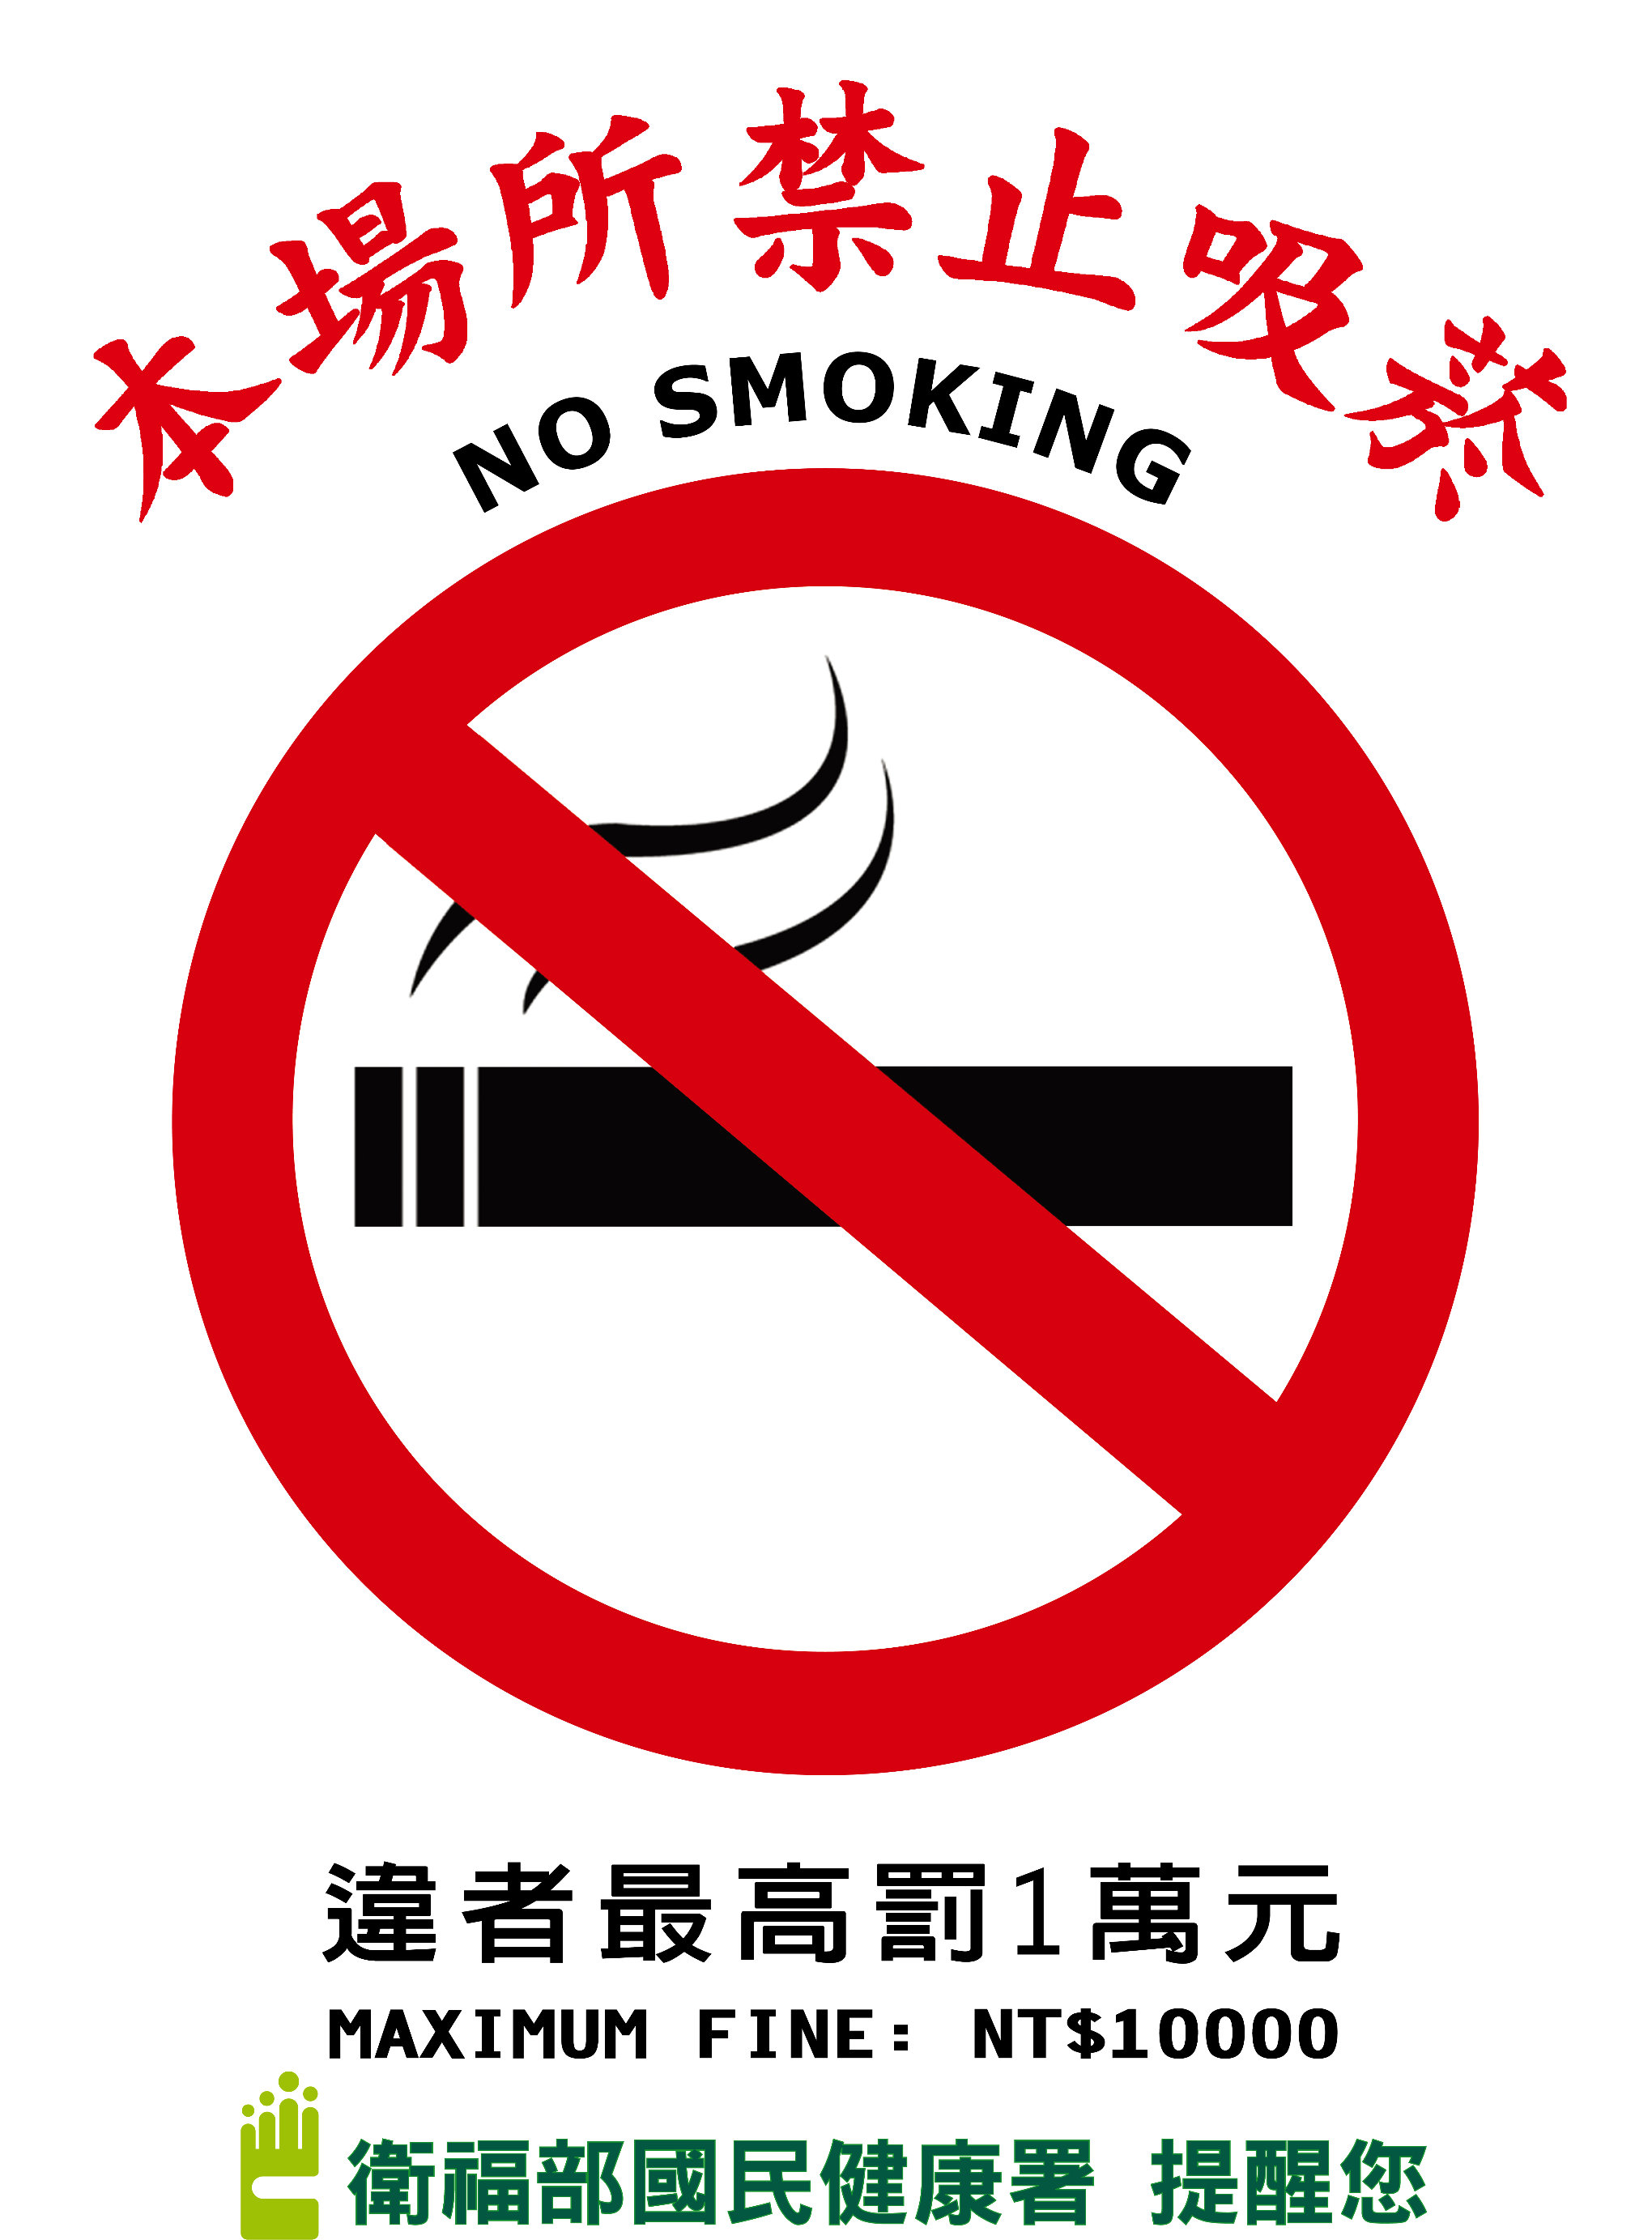 本場所禁止吸菸，違者最高罰1萬元(海報-大)文章照片